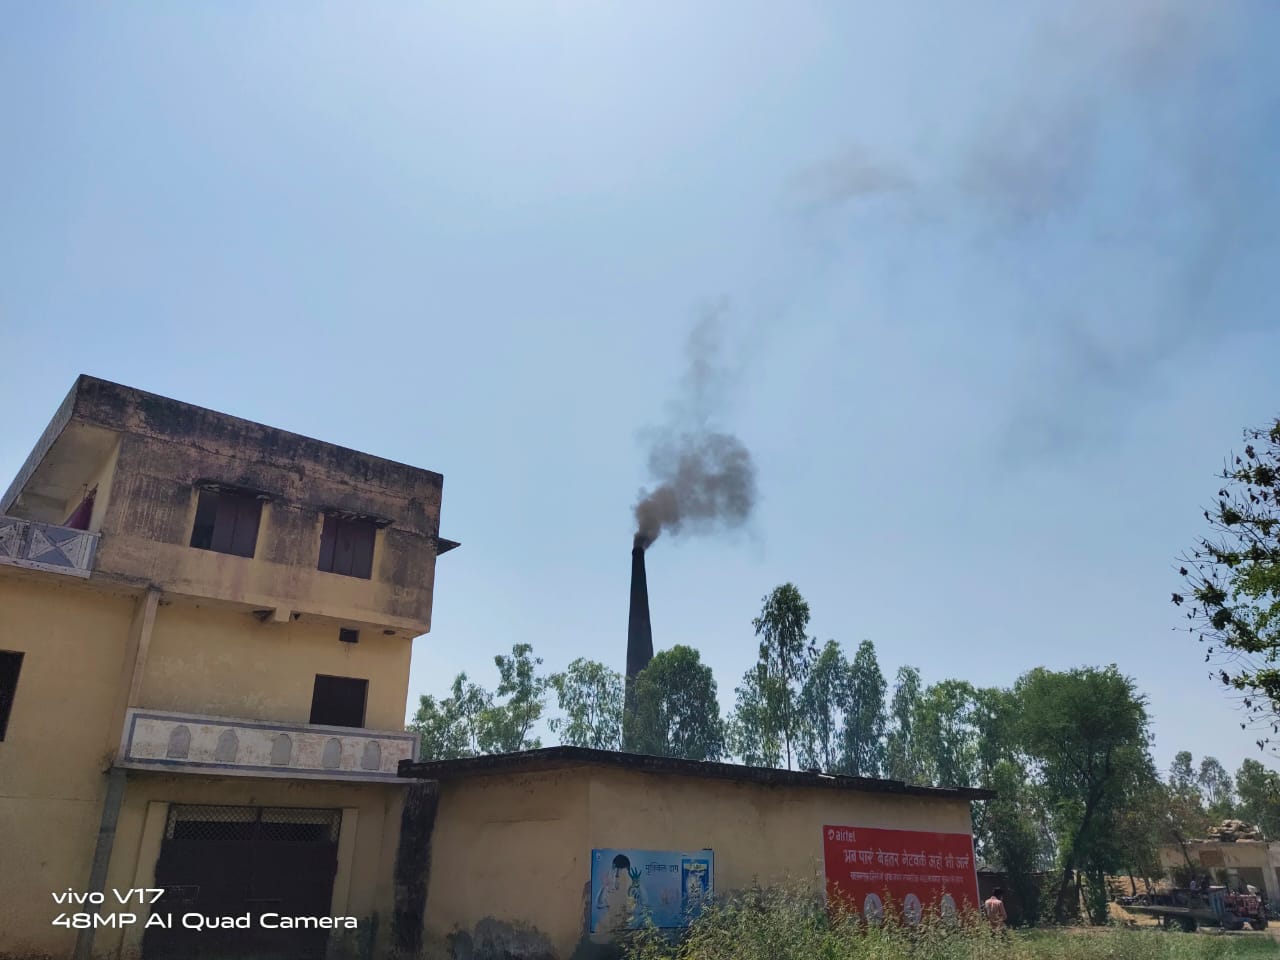 जनपद में विभिन्न स्थानों पर चल रहे ईंट भट्ठे रबड़ के धुए से फैला रहे हैं प्रदूषण प्रशासन मोन 